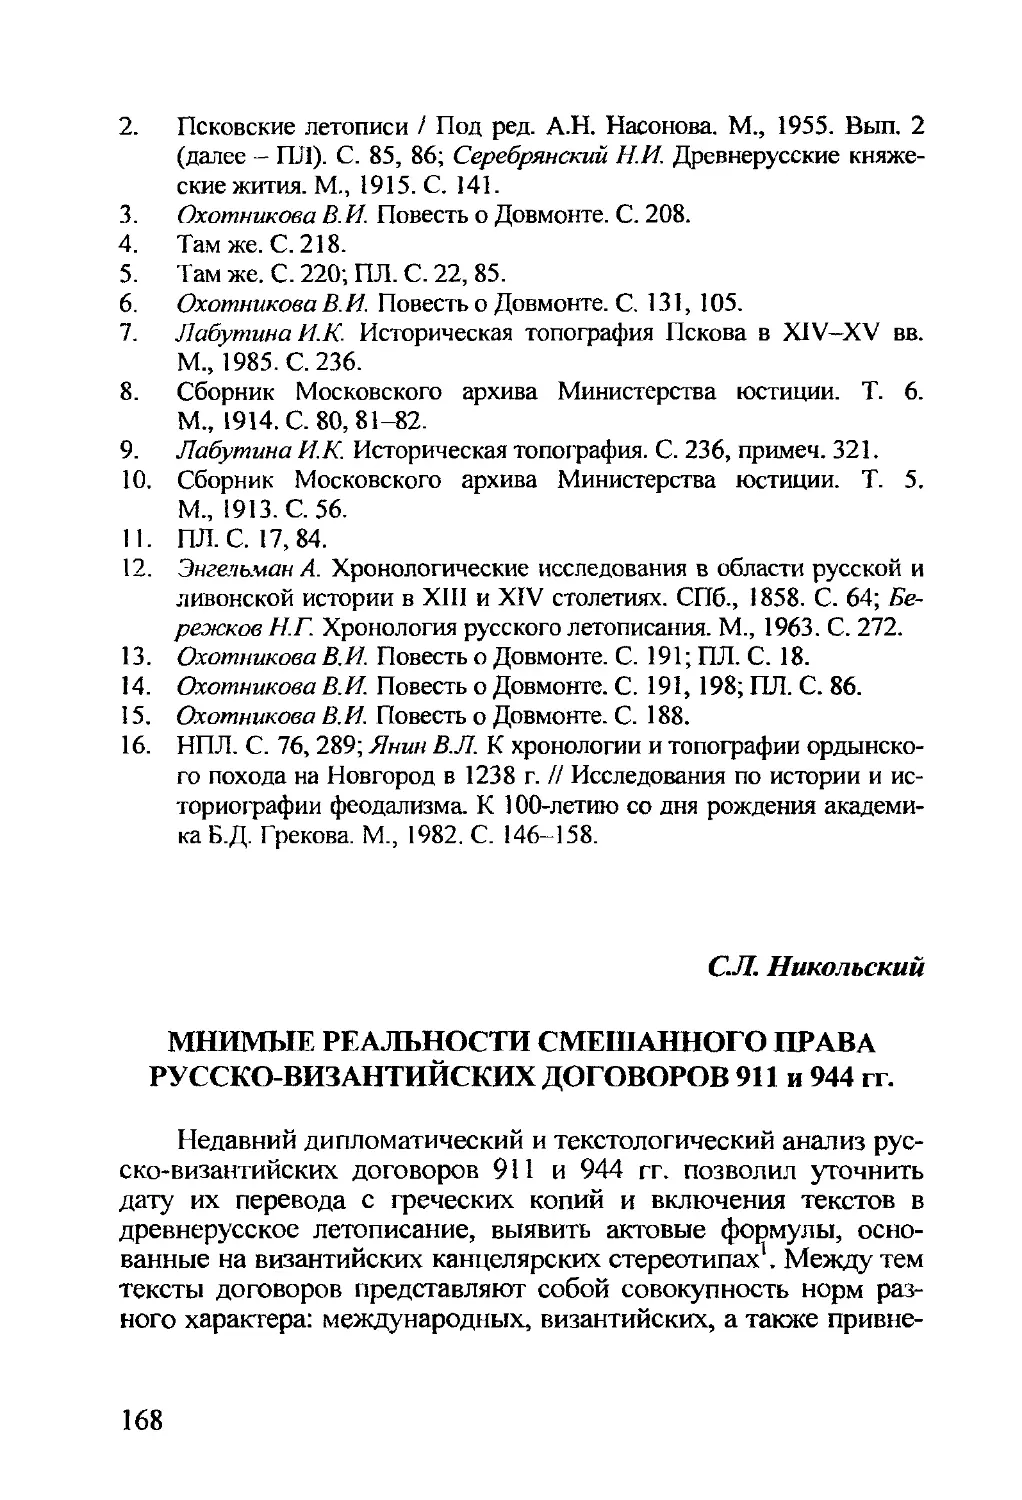 Никольский С.Л. Мнимые реальности смешанного права русско-византийских договоров 911 и 944 гг